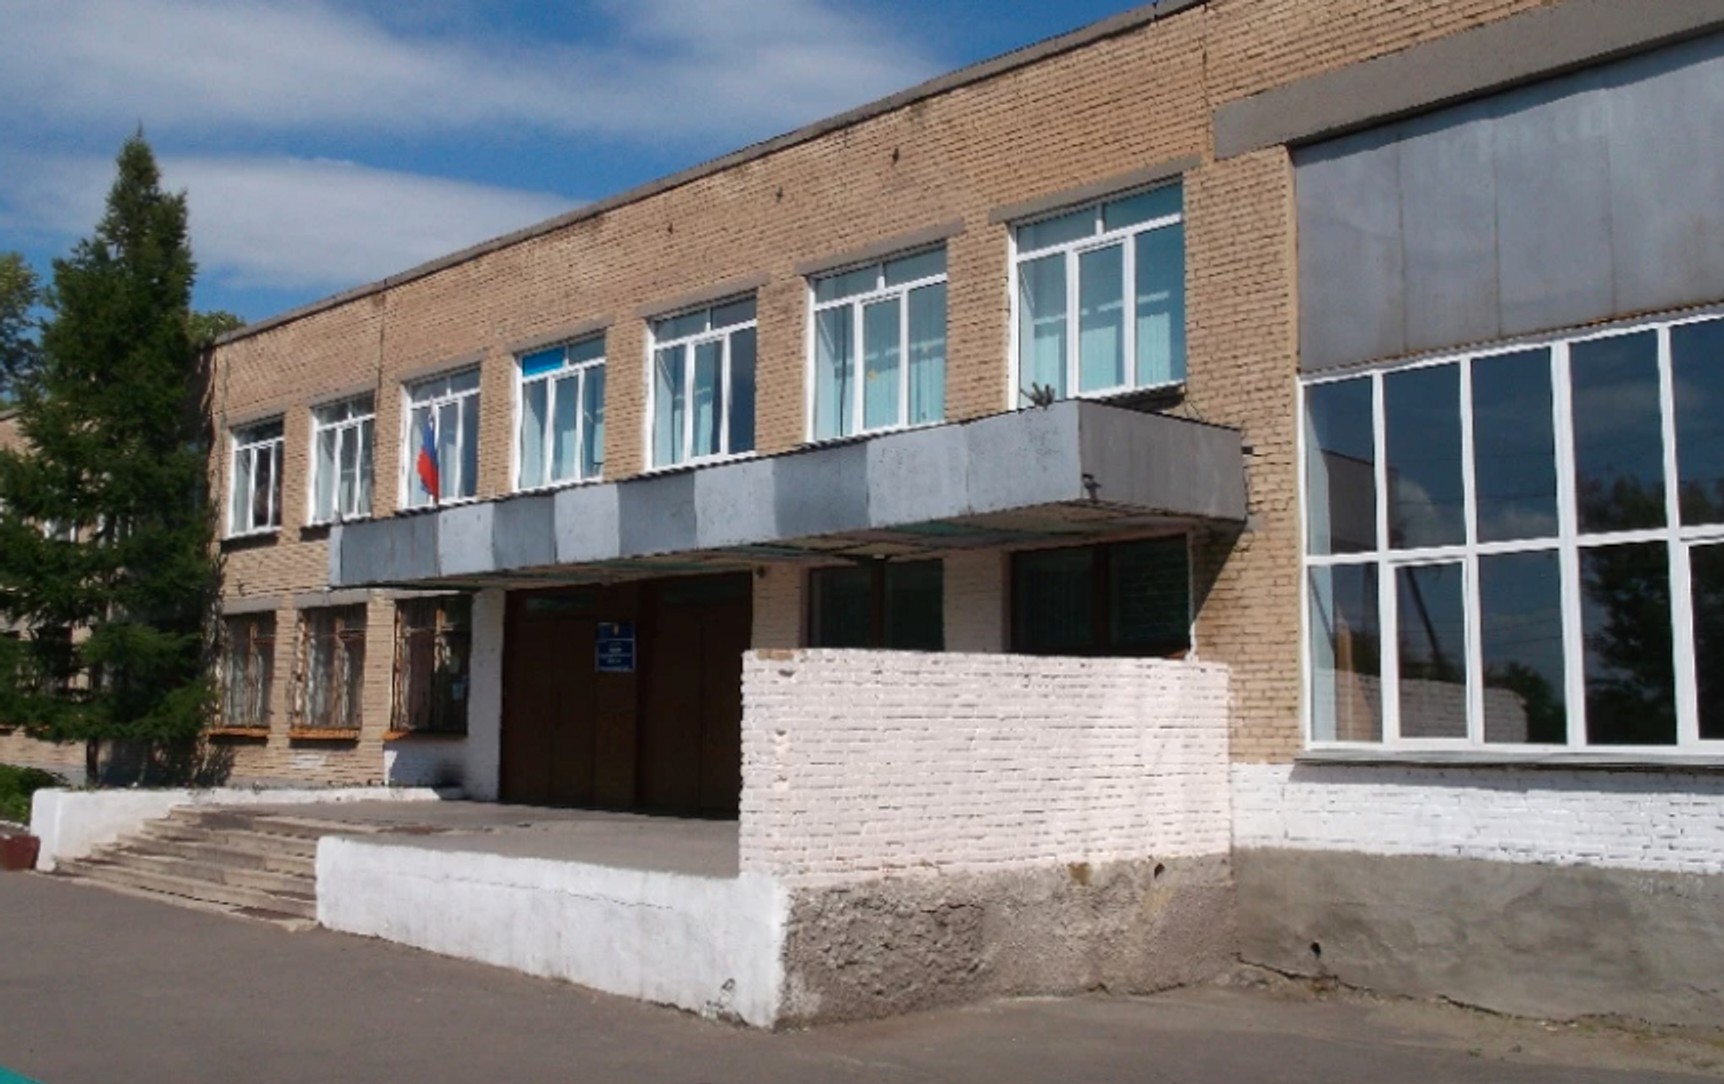 В Челябинской области учитель заставил шестиклассника извиняться на коленях. Полиция возбудила дело